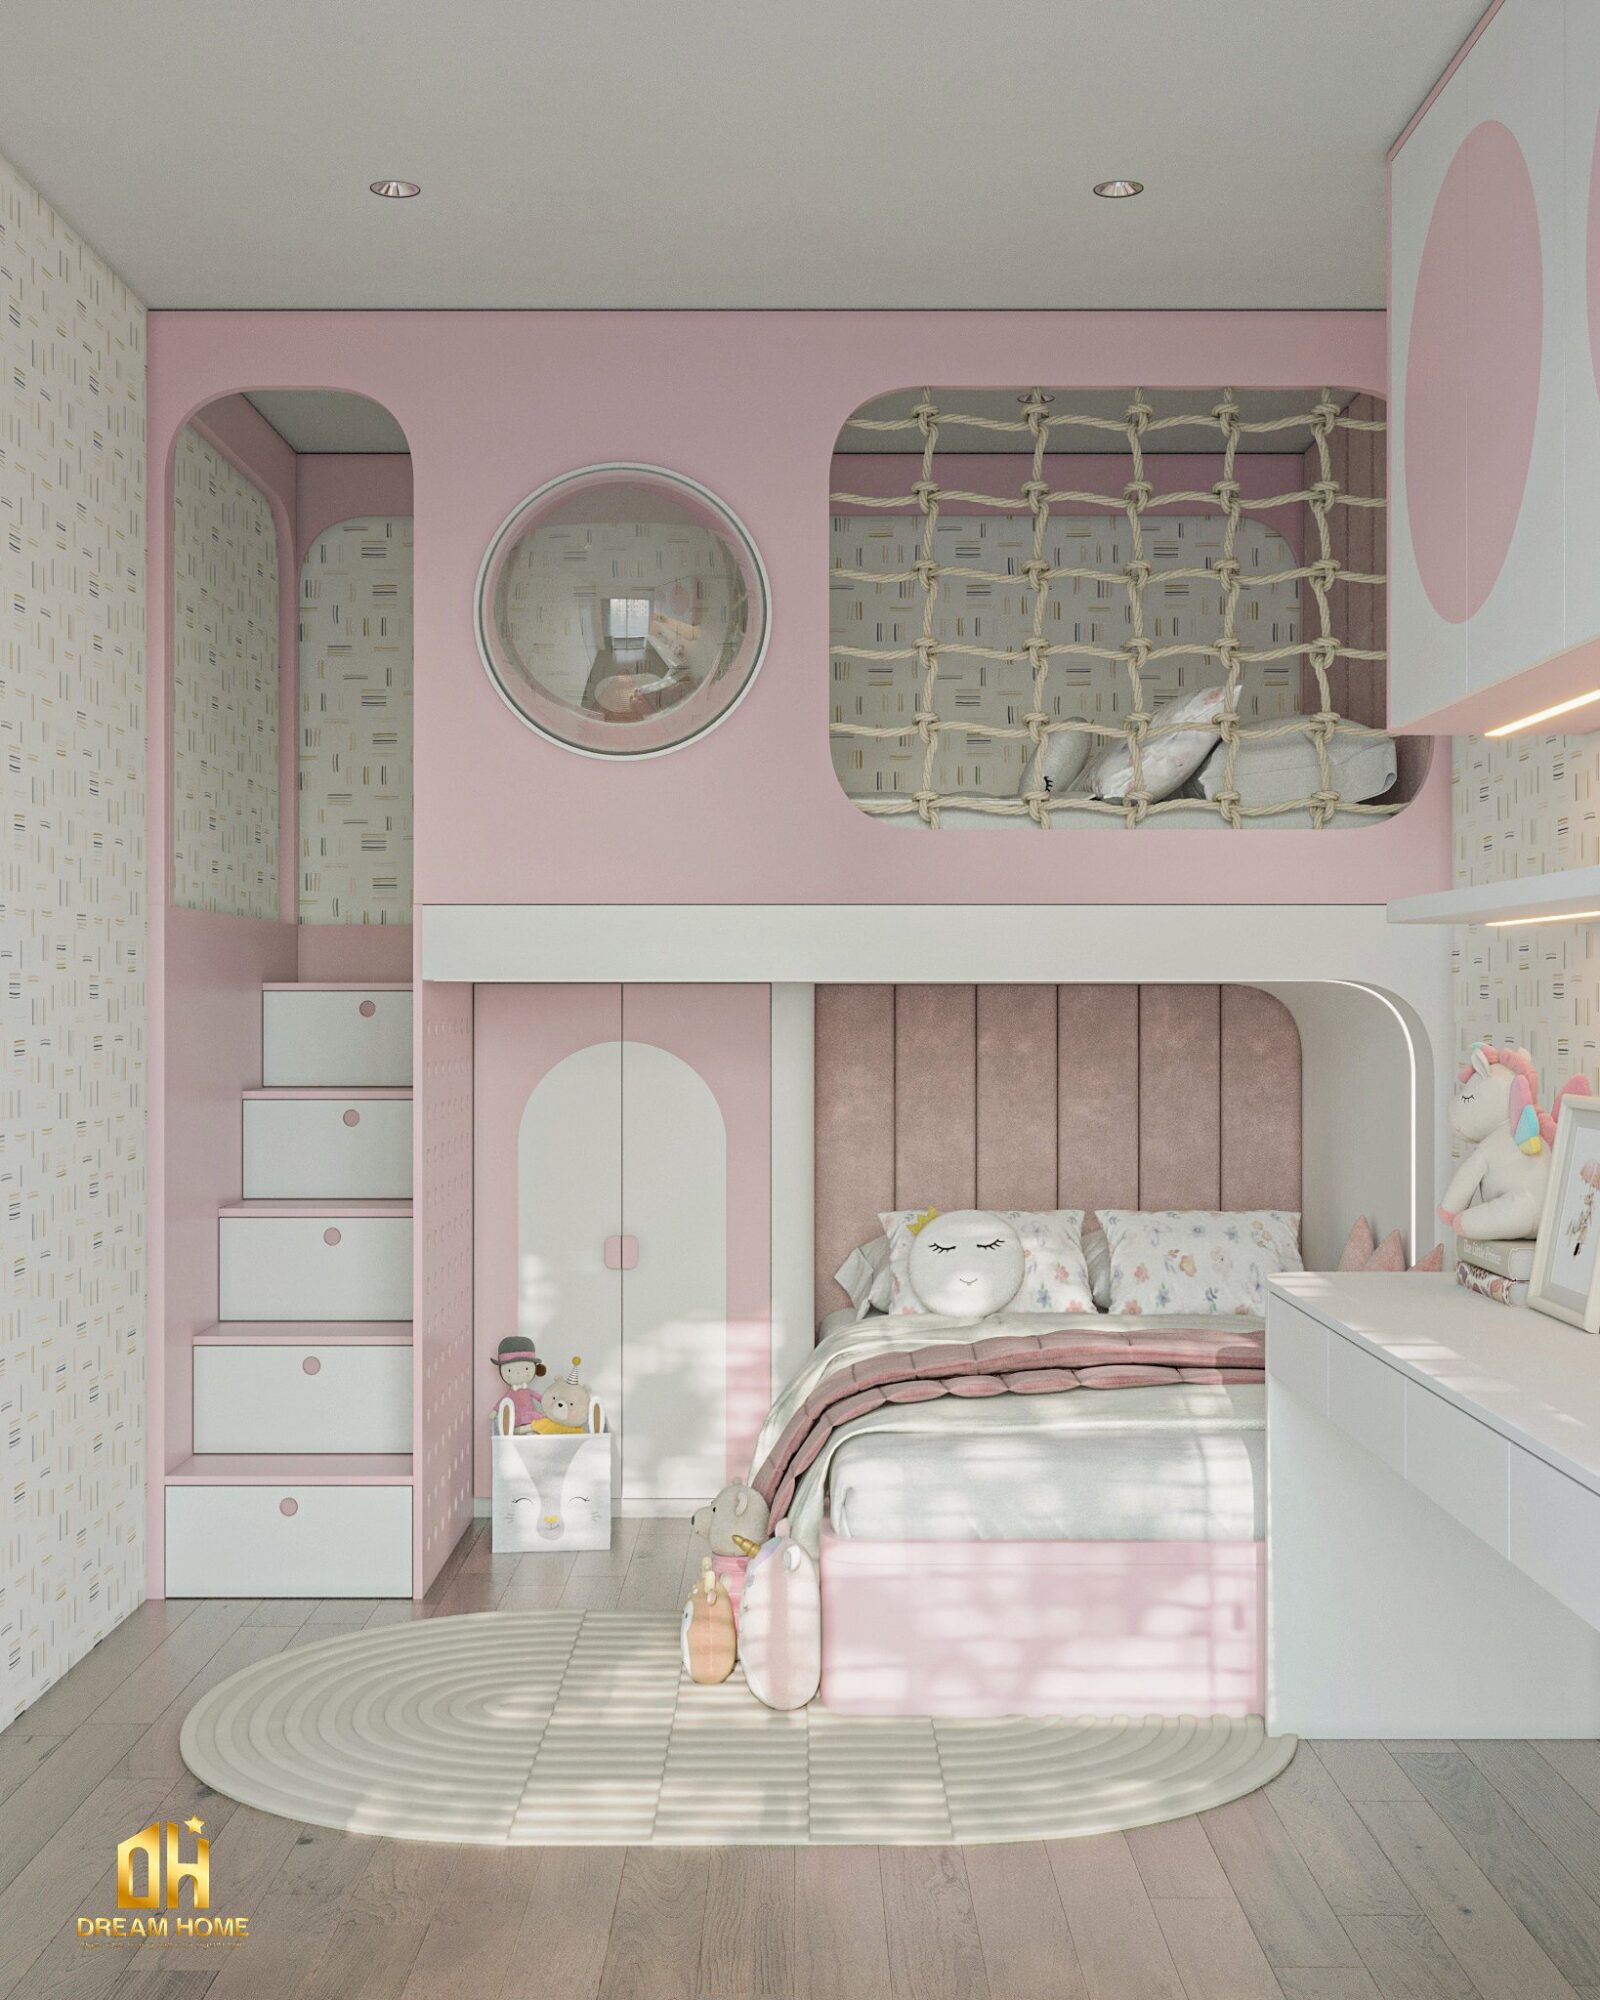 Giường ngủ được thiết kế xinh xắn và an toàn, với các chi tiết mềm mại và những mảng màu hồng dịu dàng